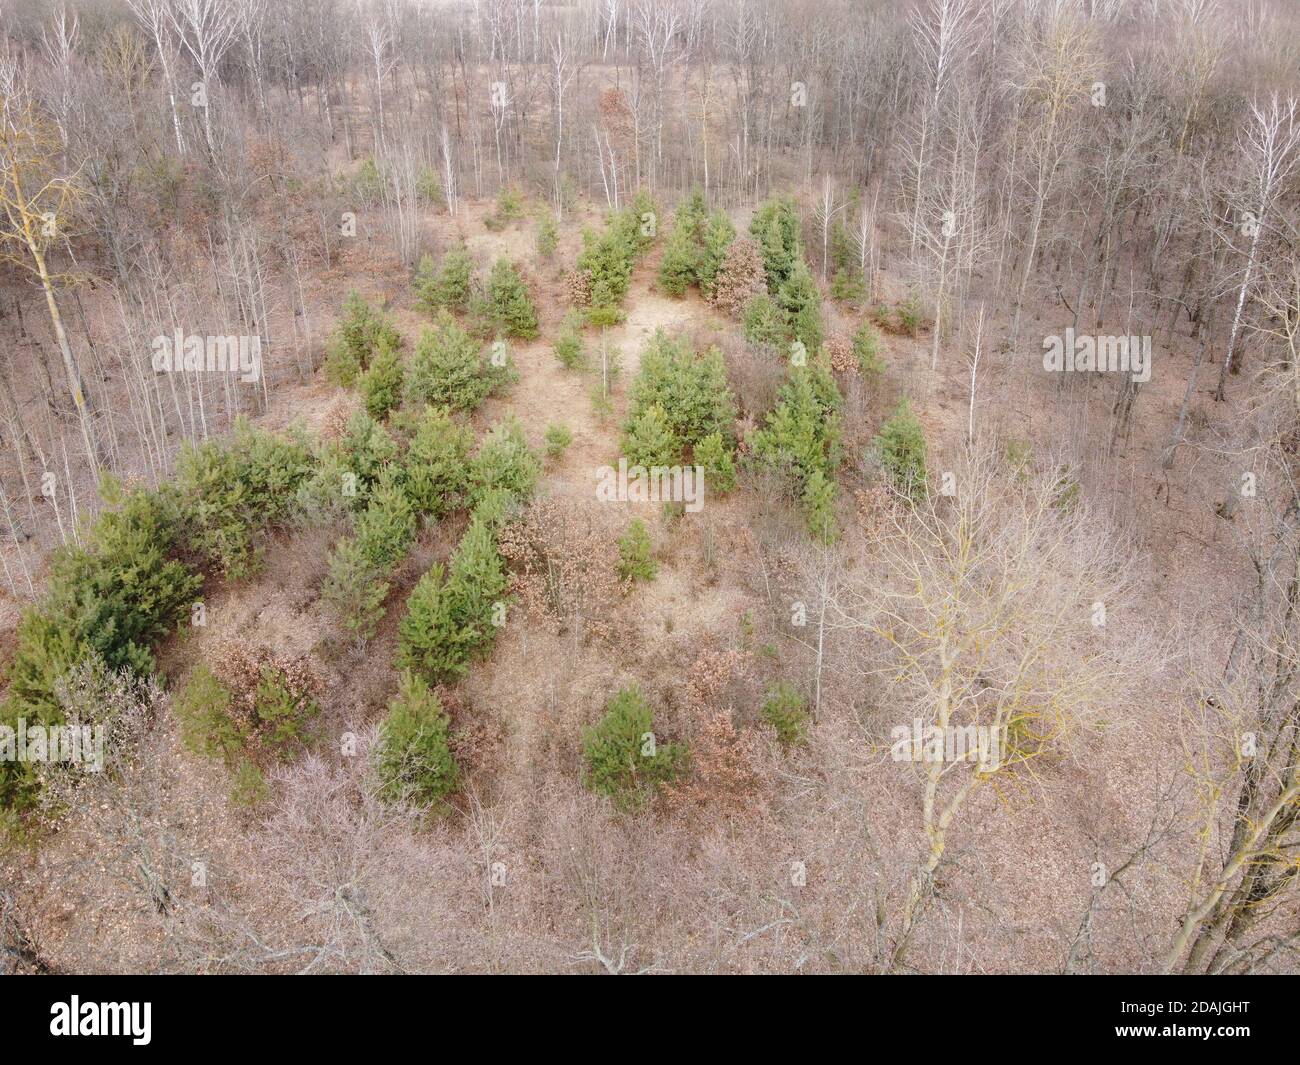 Giovani pini circondati da alberi senza frondoli nella foresta, vista aerea. Foresta primaverile. Foto Stock